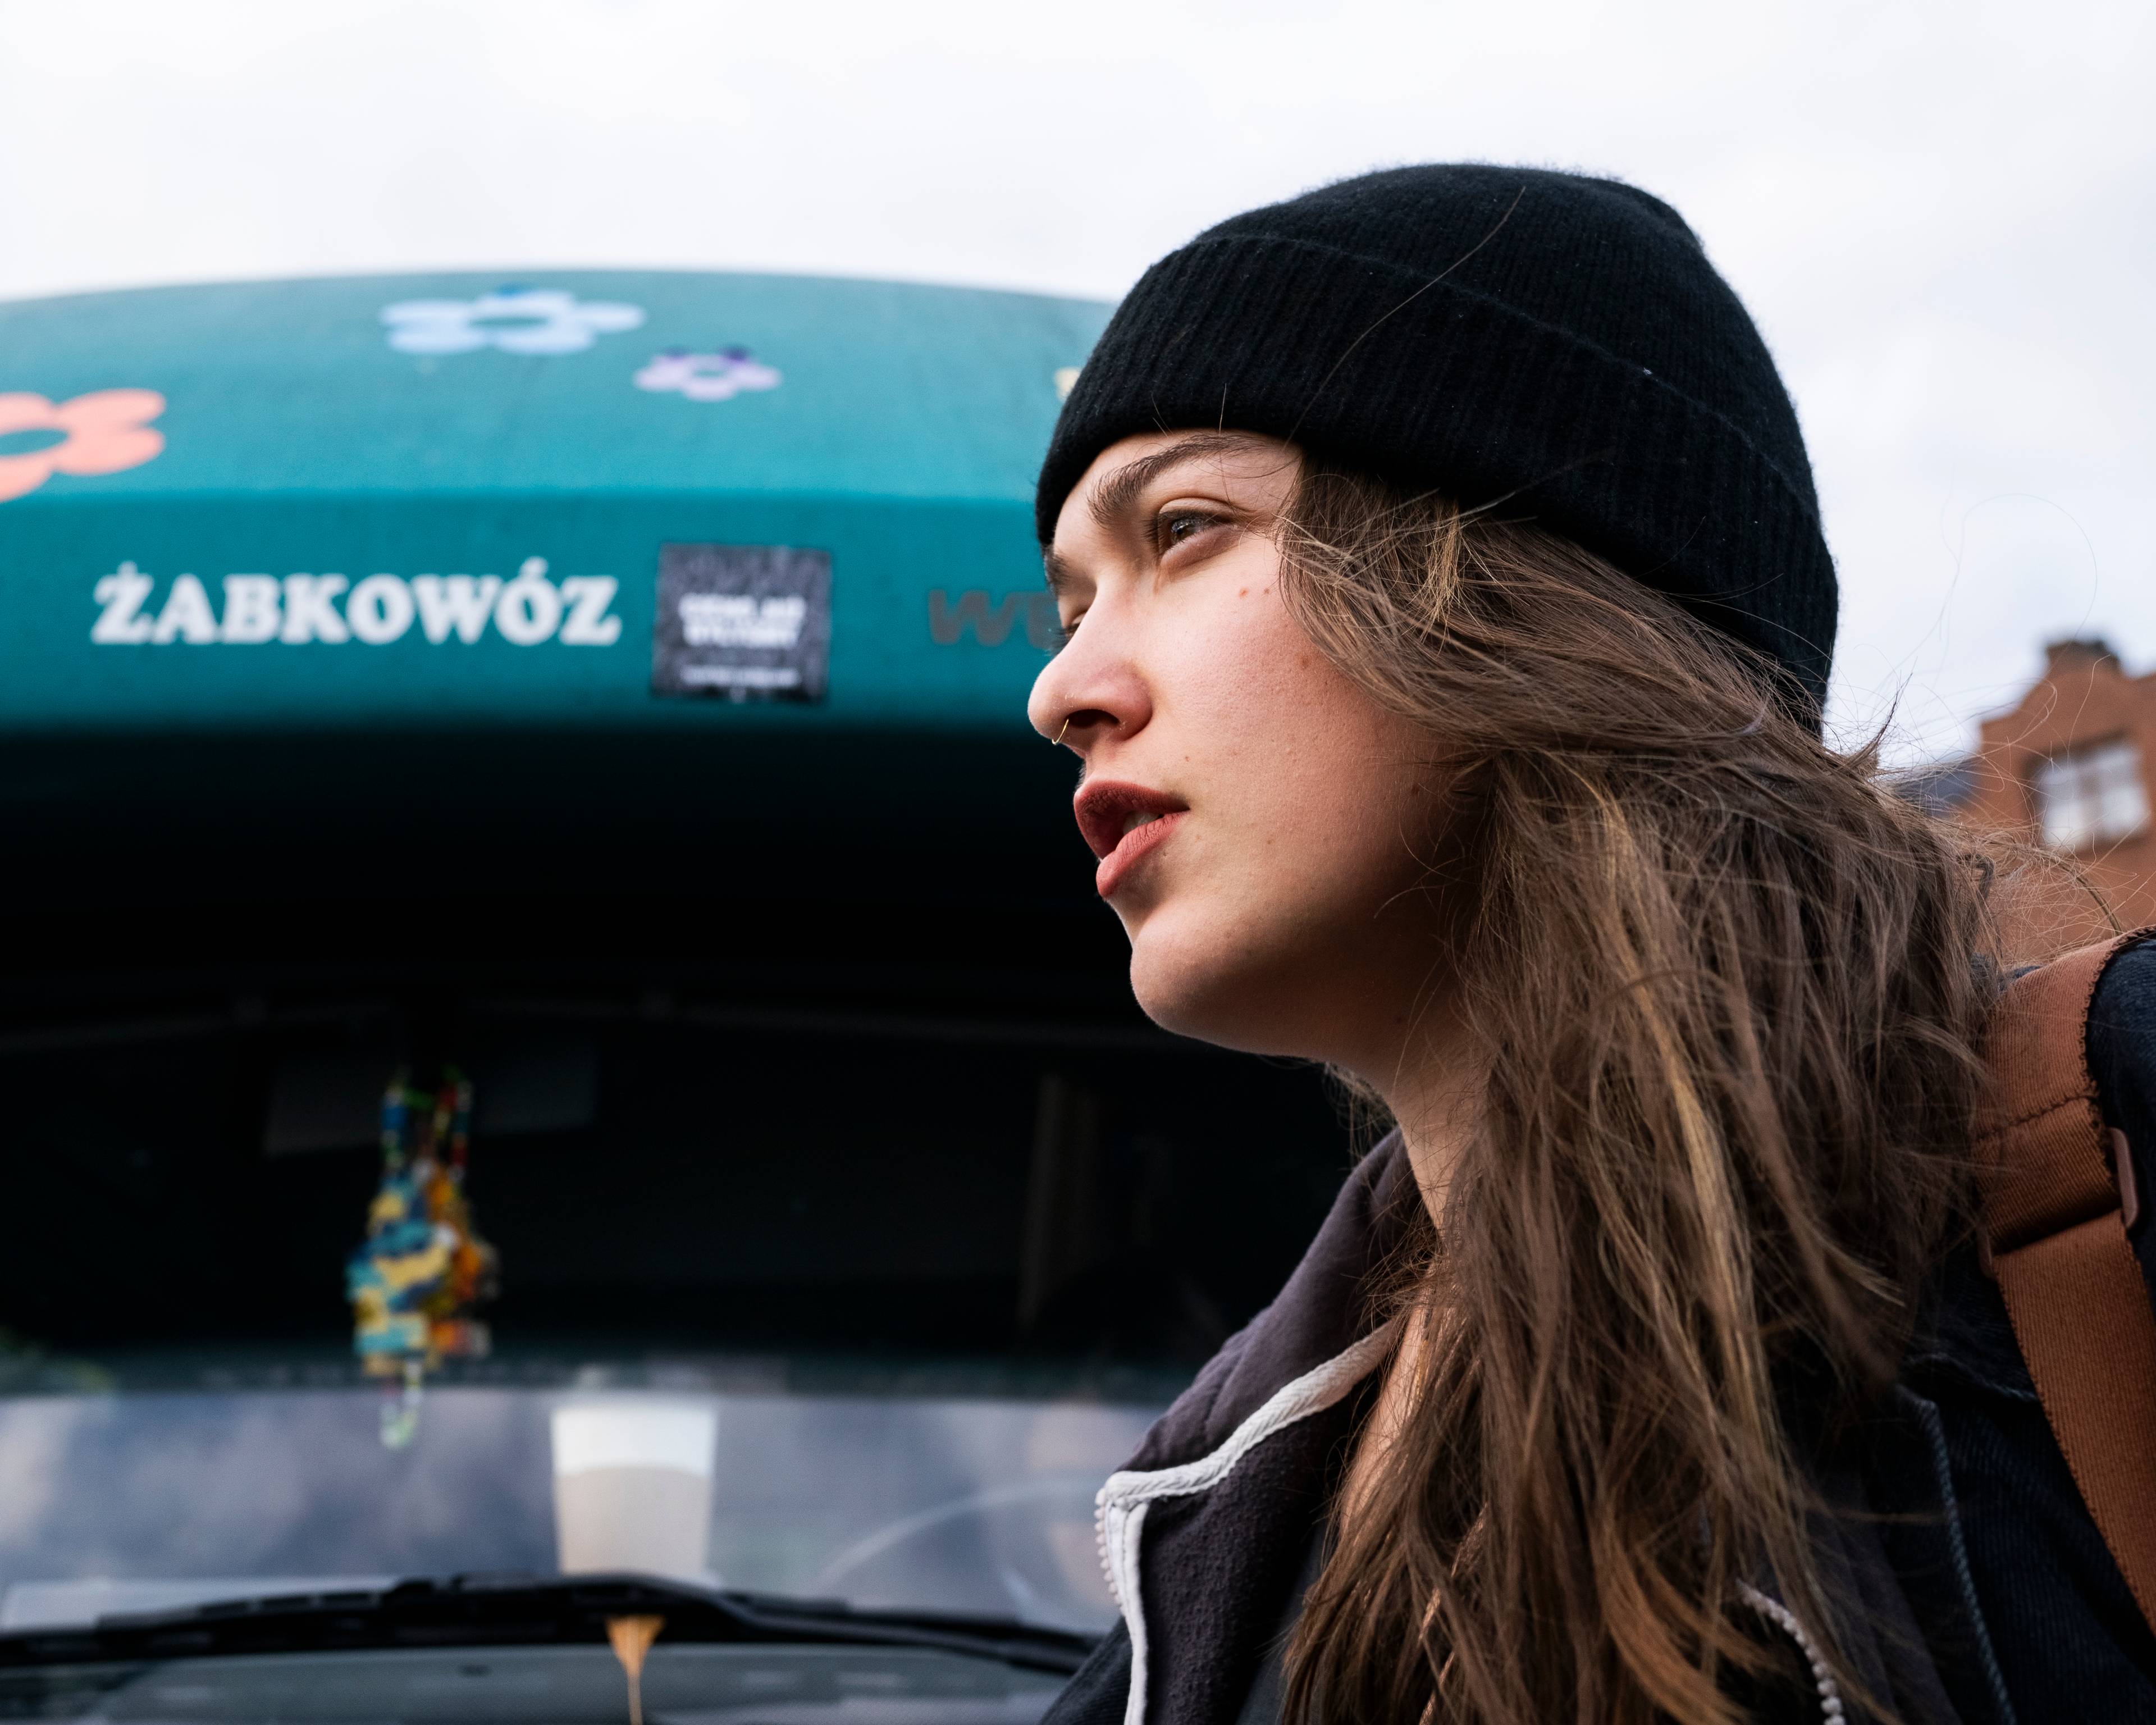 Portret dziewczyny w czarnej czapce, profil, na tle samochodu z napisem Żabkowóz